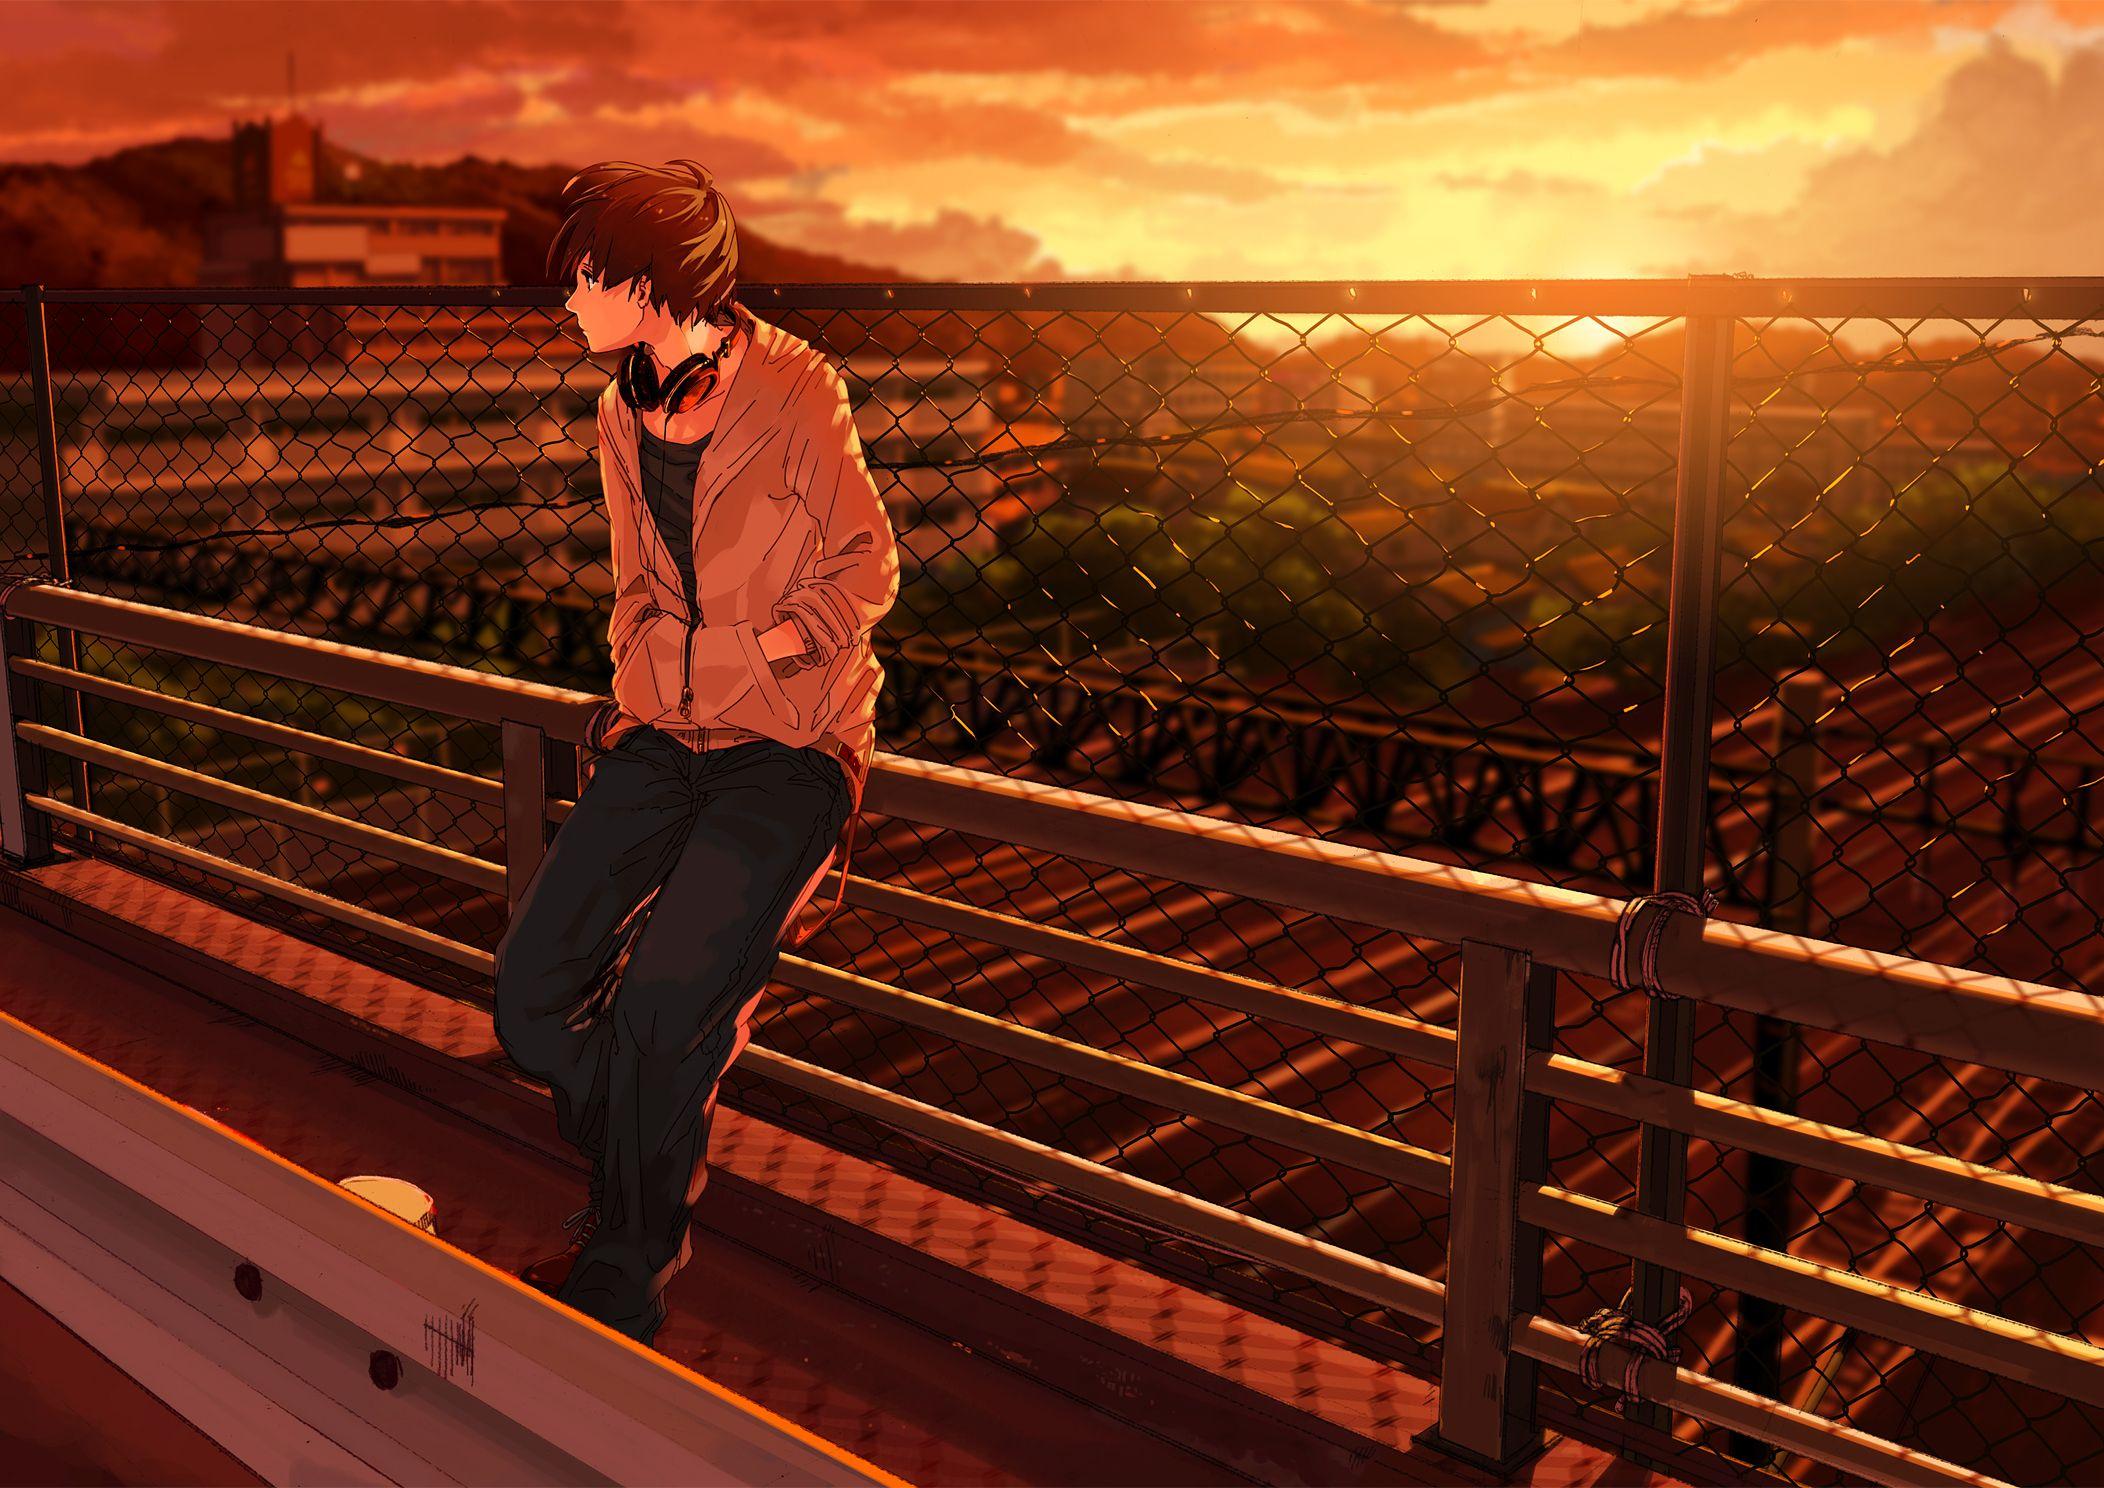 35 Gambar Anime Alone Boy Wallpapers Hd terbaru 2020